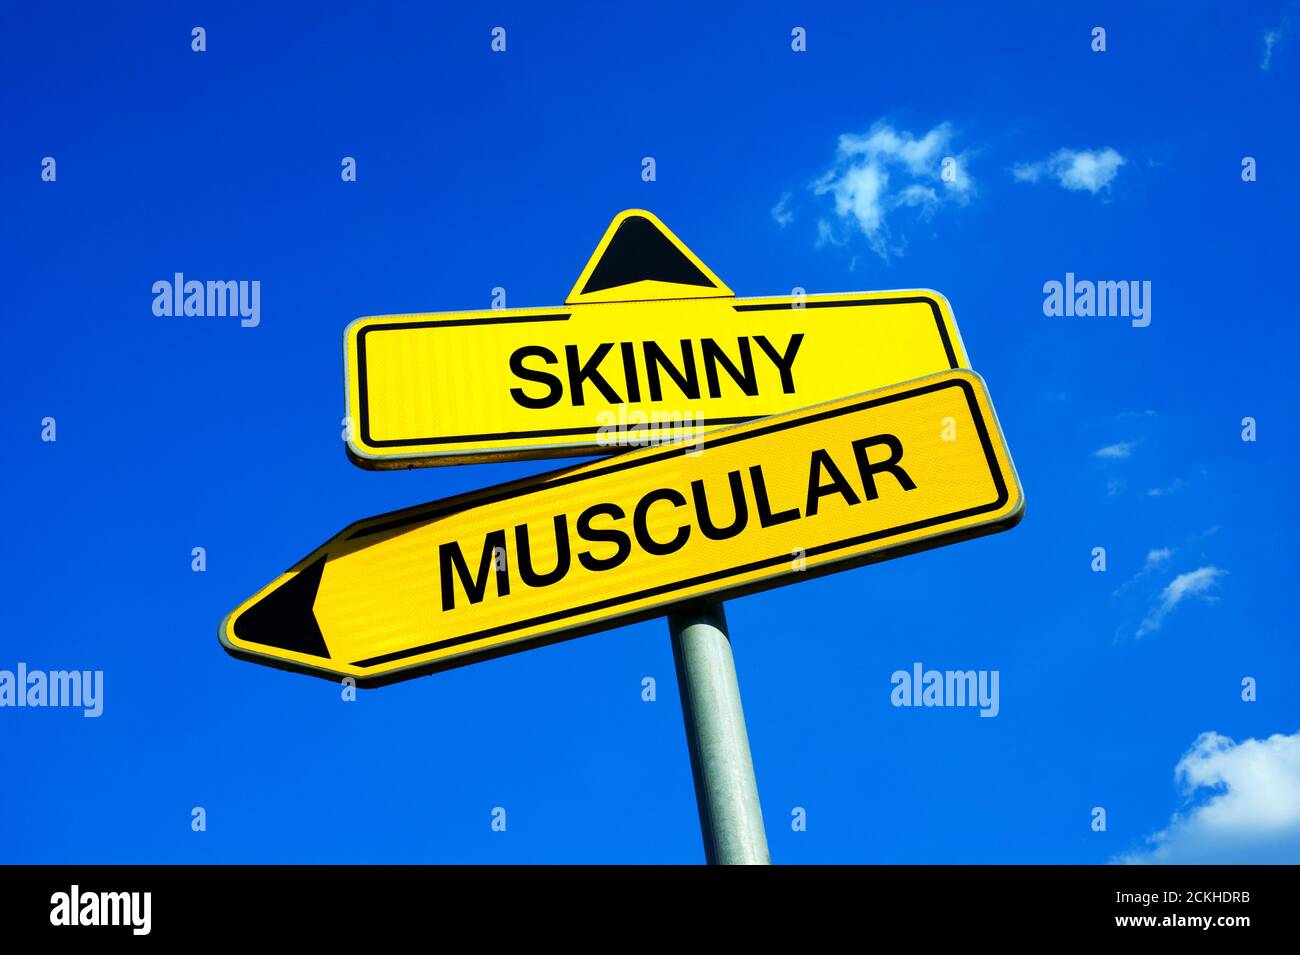 Skinny vs muscolare - segnale di traffico con due opzioni - appello per fare bodybuilding, esercizio fisico e di esercizio per guadagnare corpo a forma atletica con muscl Foto Stock